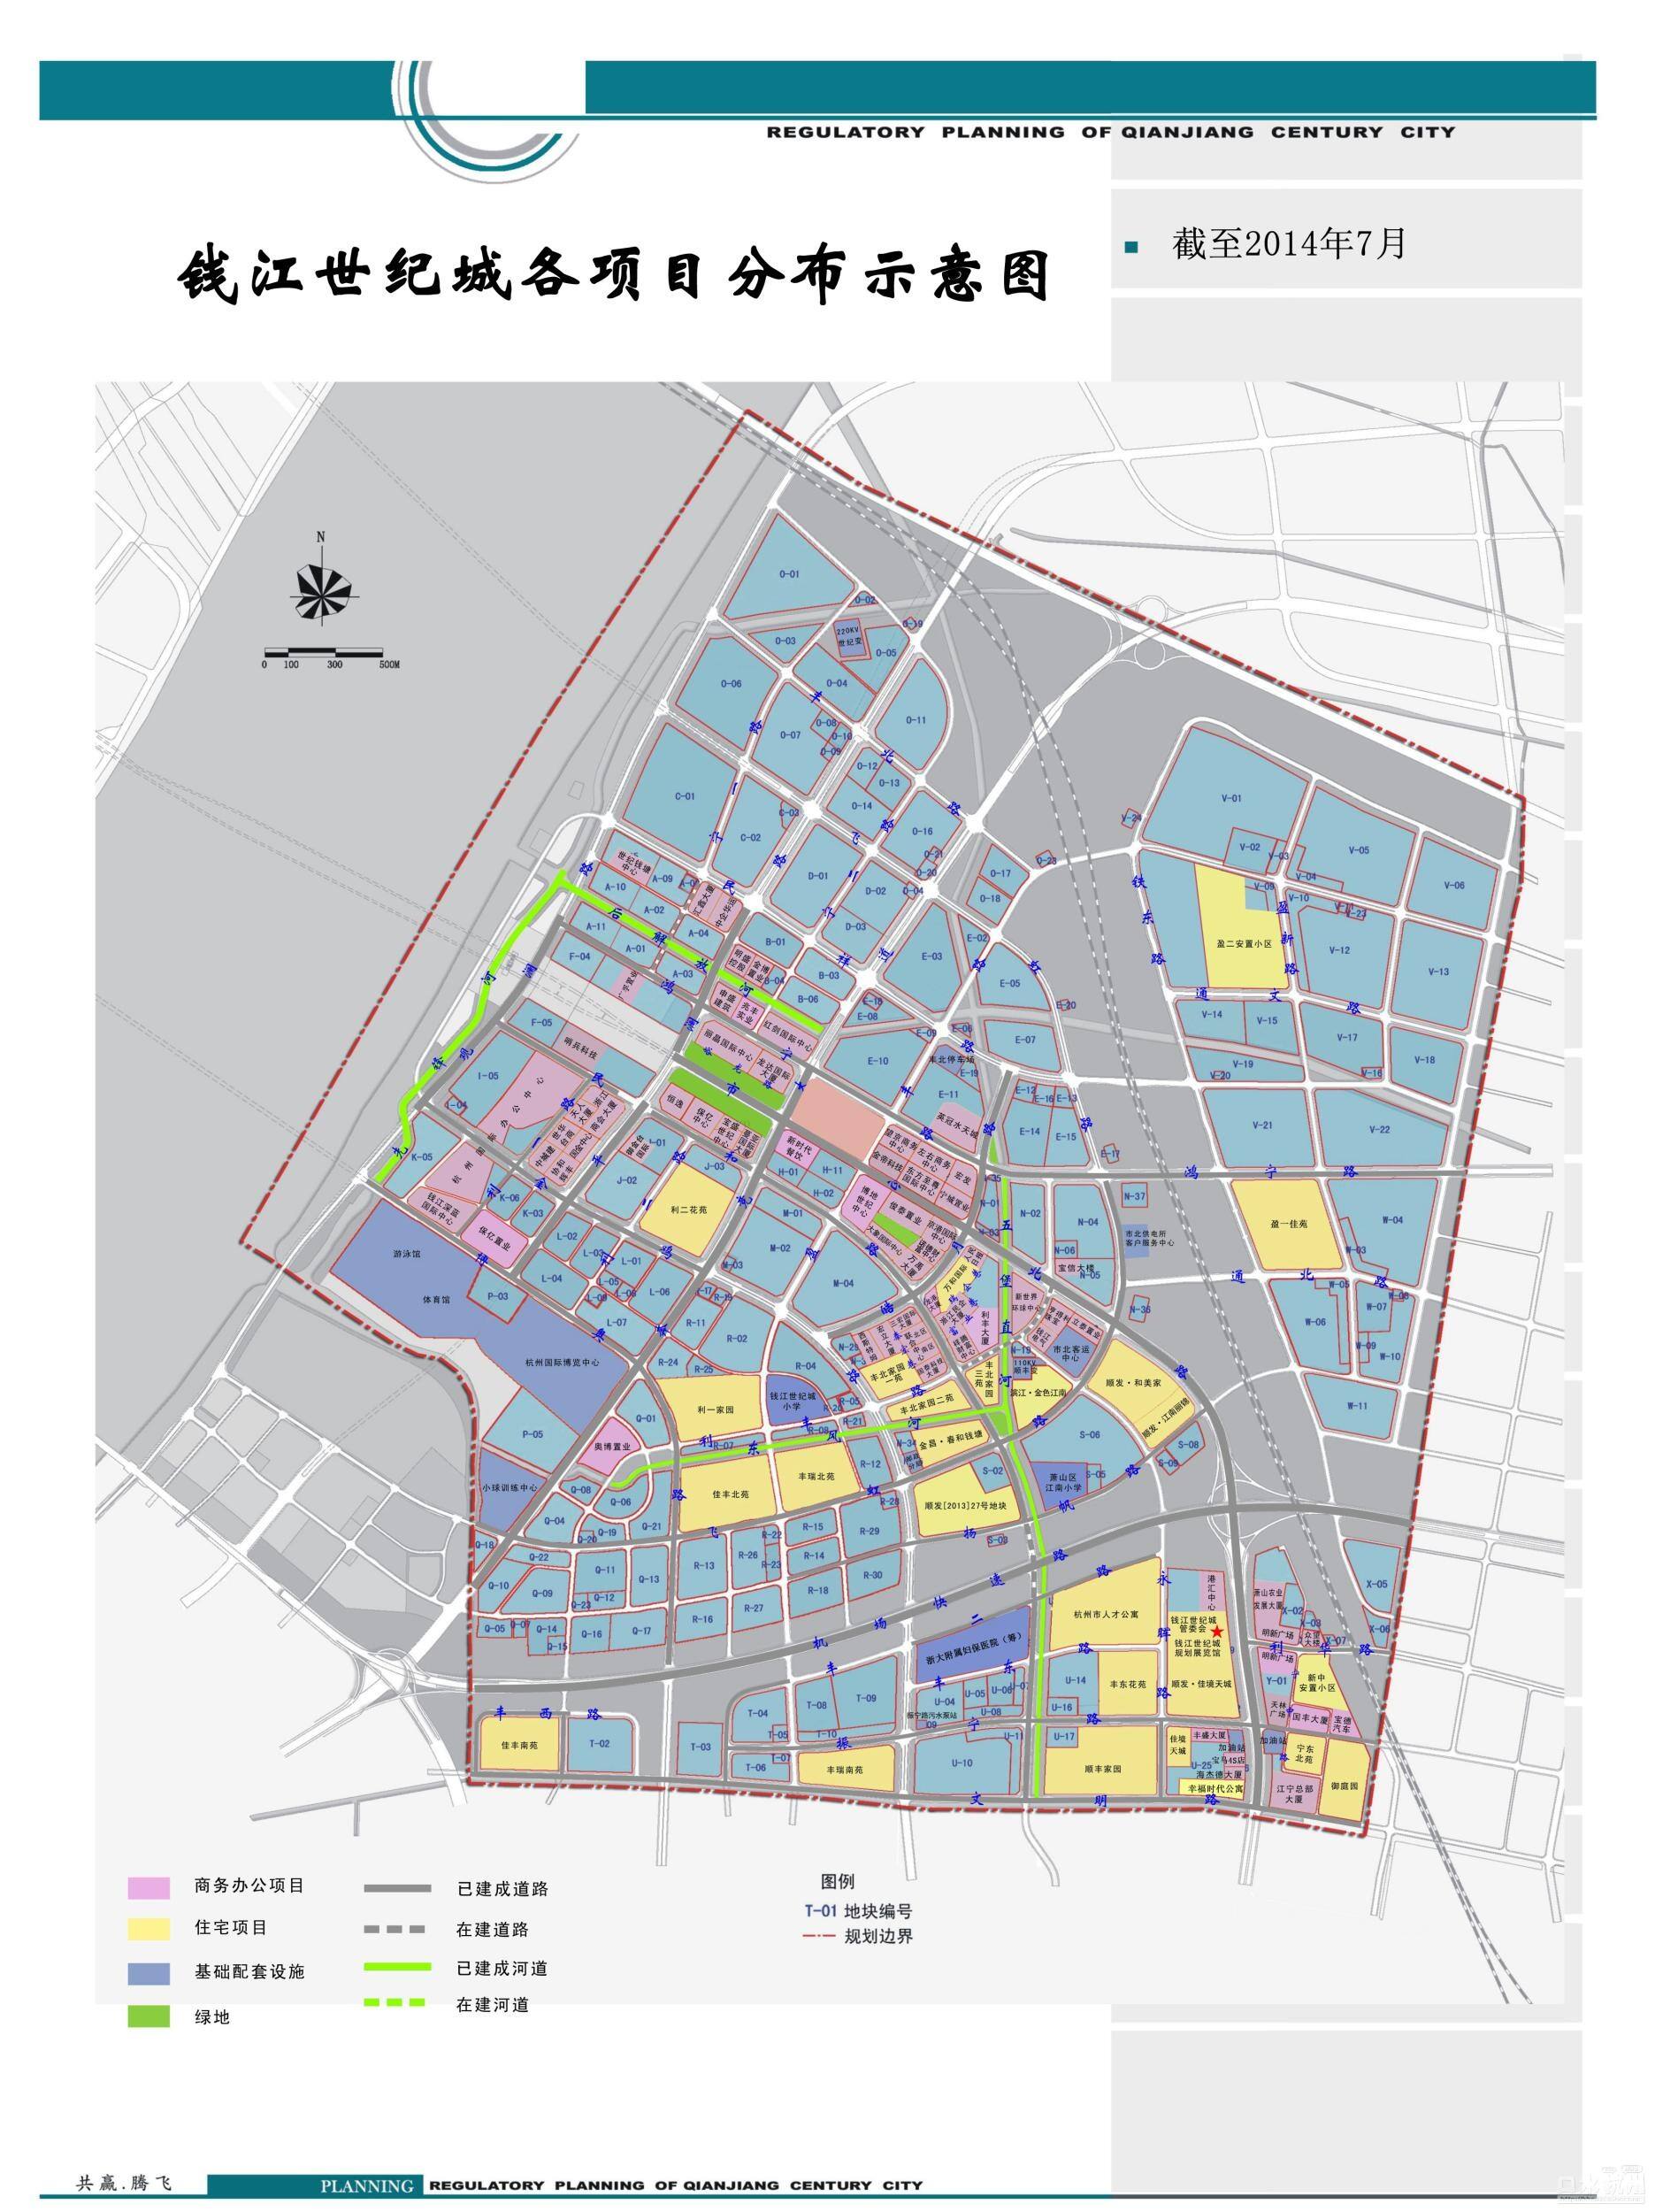 钱江世纪城各项目最新示意图截止2015年3月